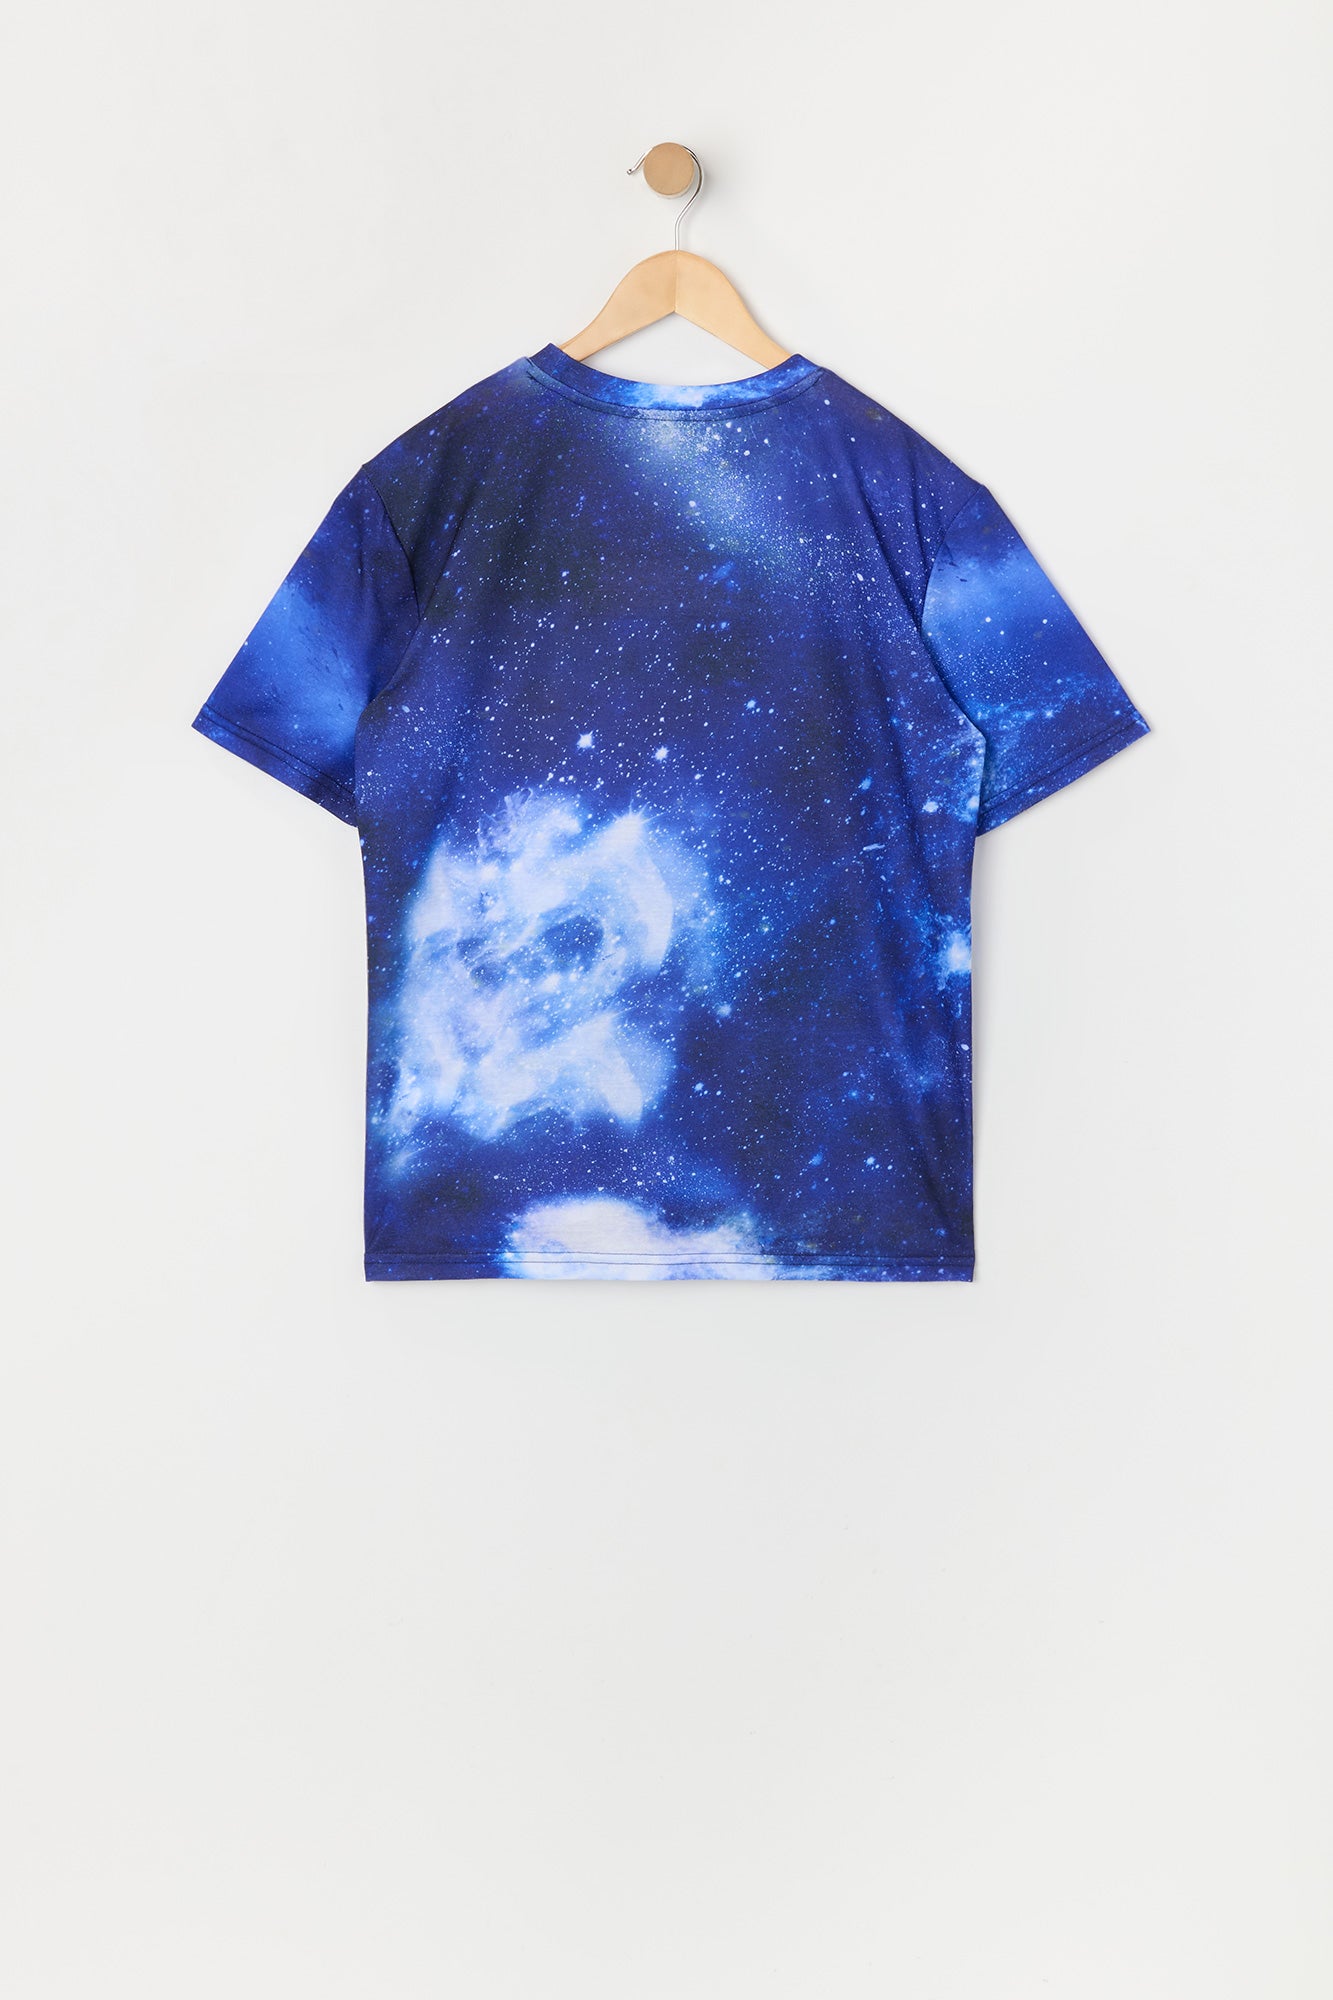 Boys Galaxy Print NASA Patch T-Shirt